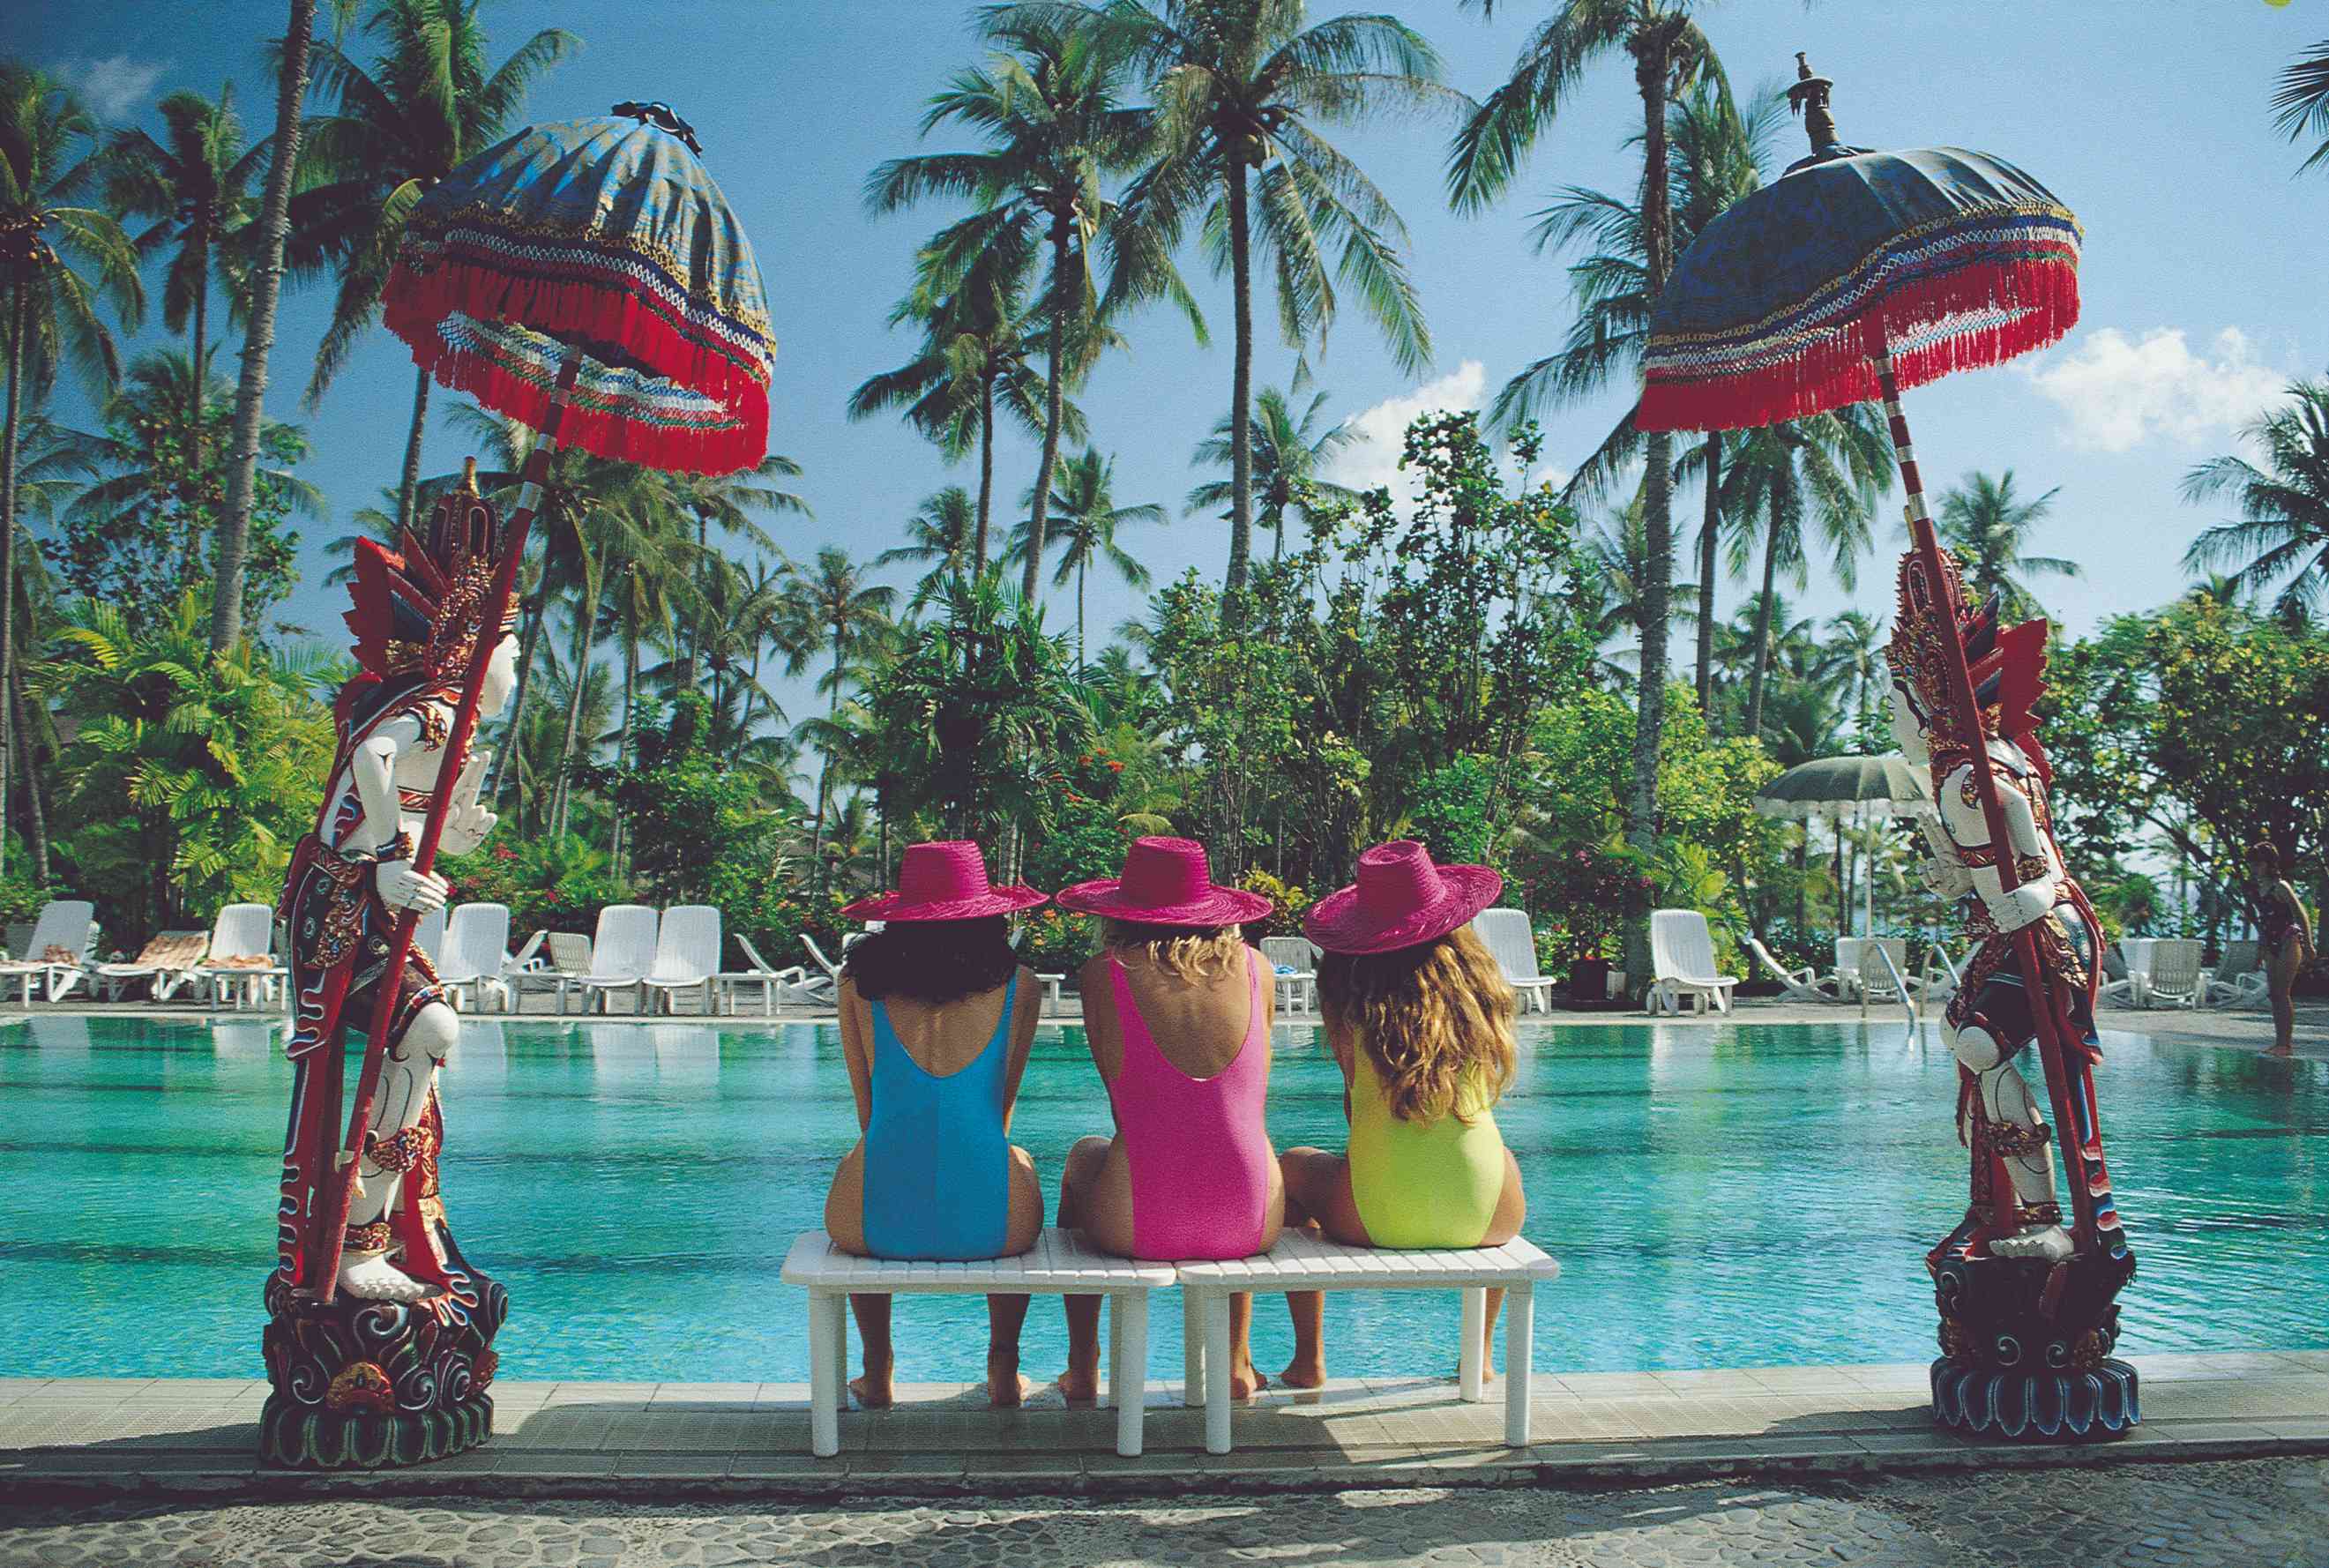 Jeunes filles au bord de la piscine de leur hôtel.